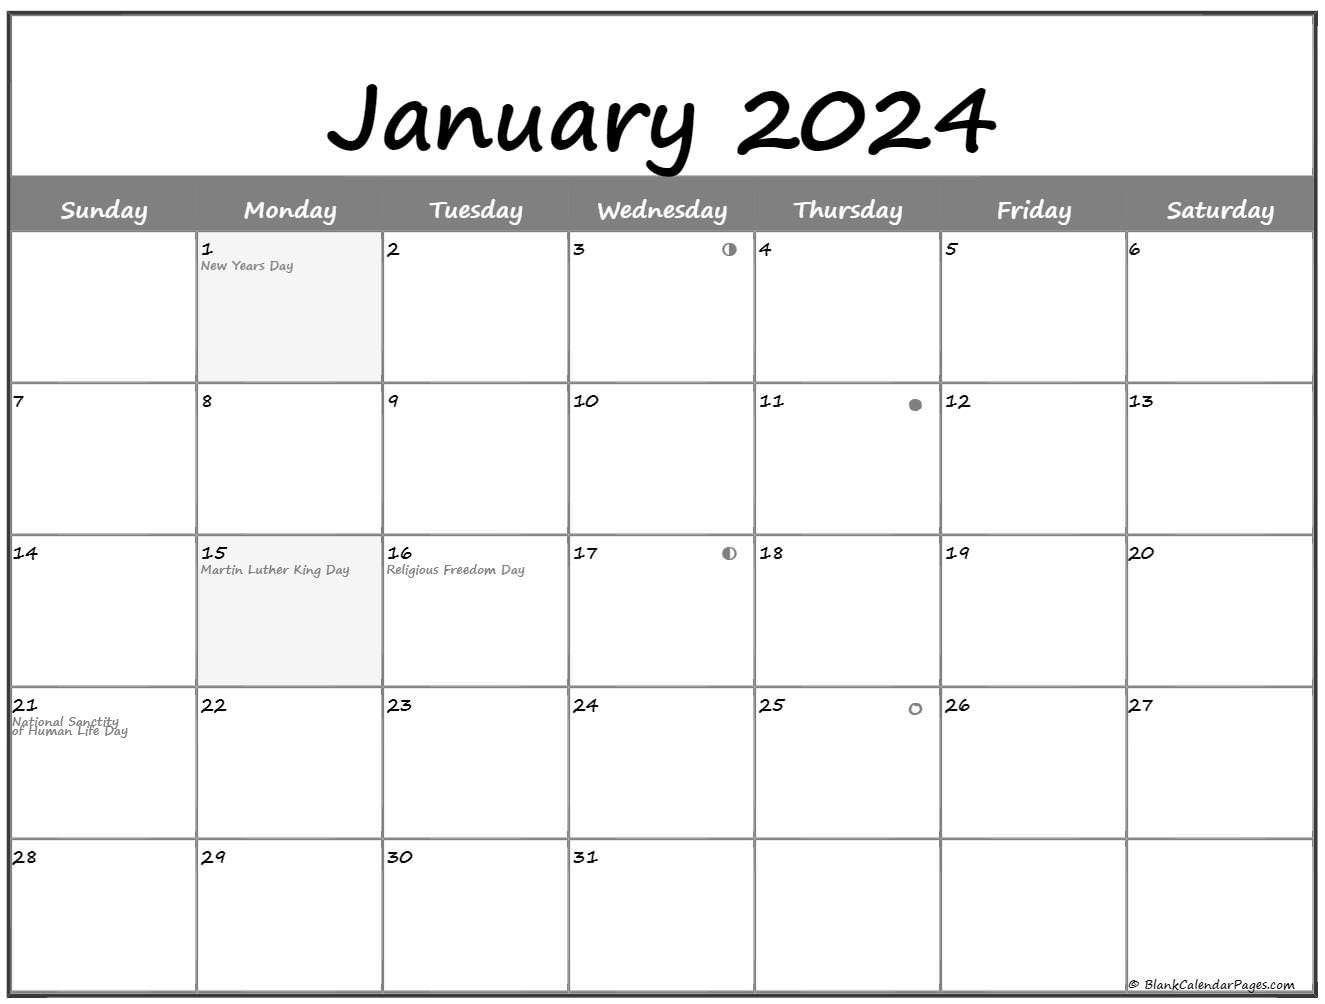 January 2019 Lunar Calendar | Moon Phase Calendar1767 x 1333